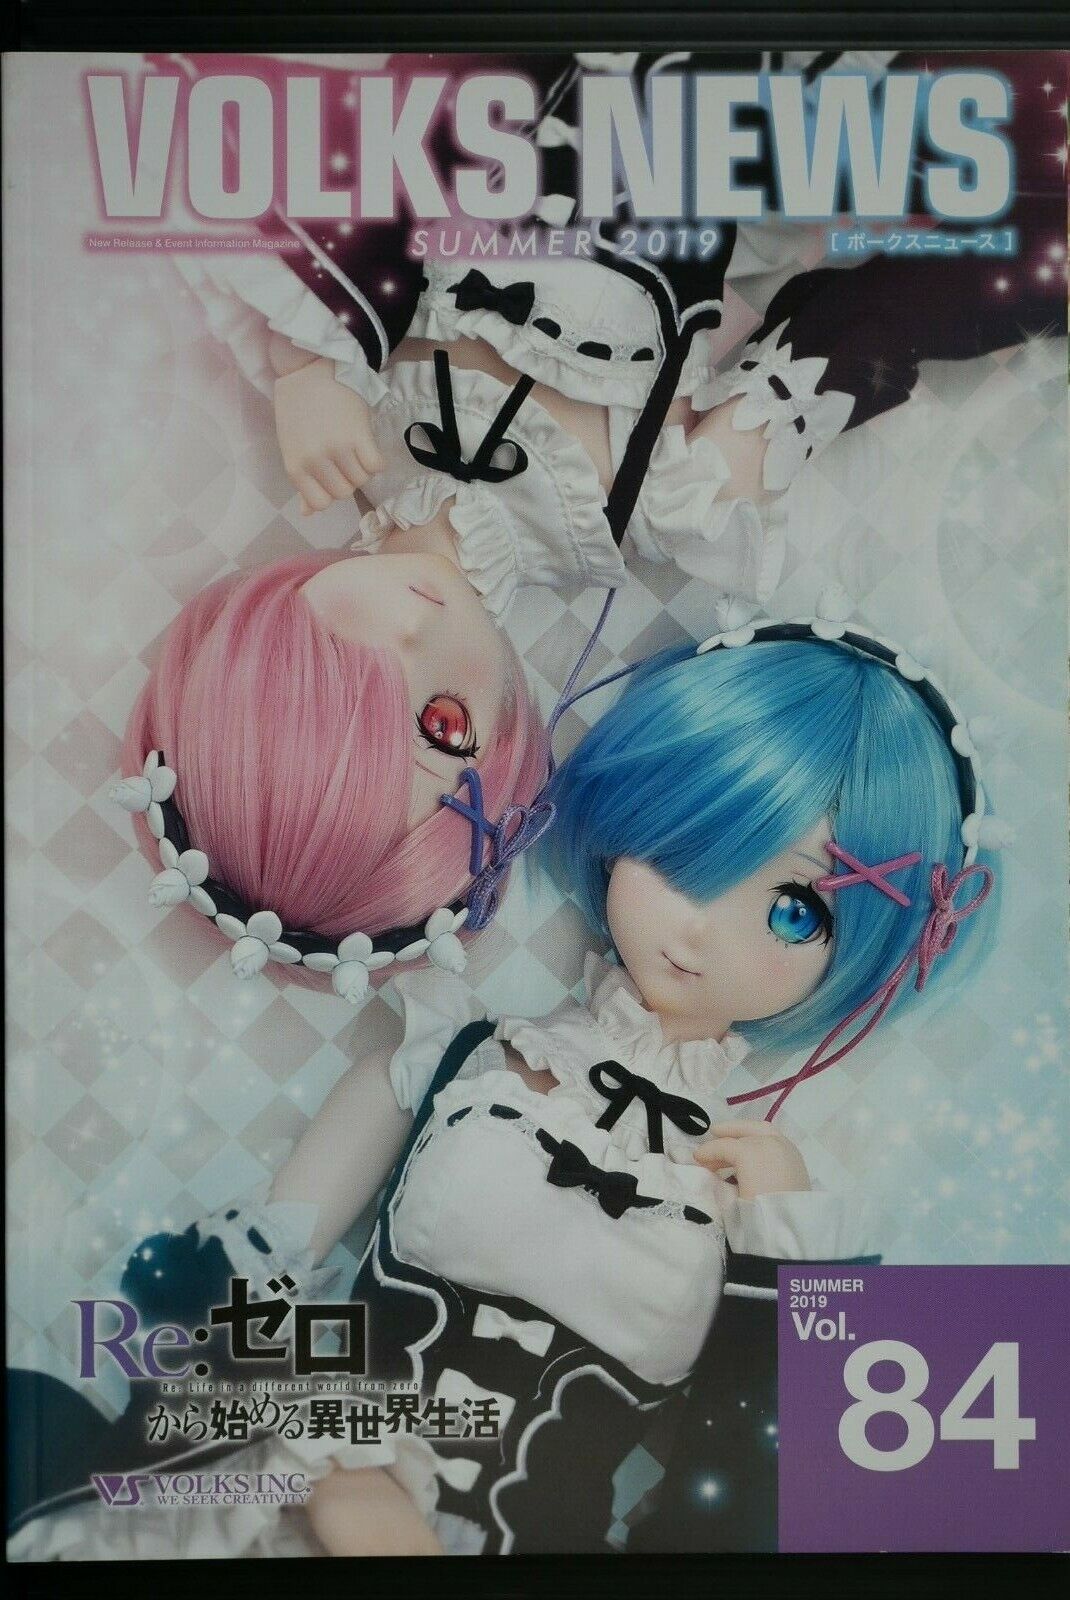 Super Dollfie Magazine: Volks News Summer 2019 vol.84 (Re: Zero etc.) - JAPAN